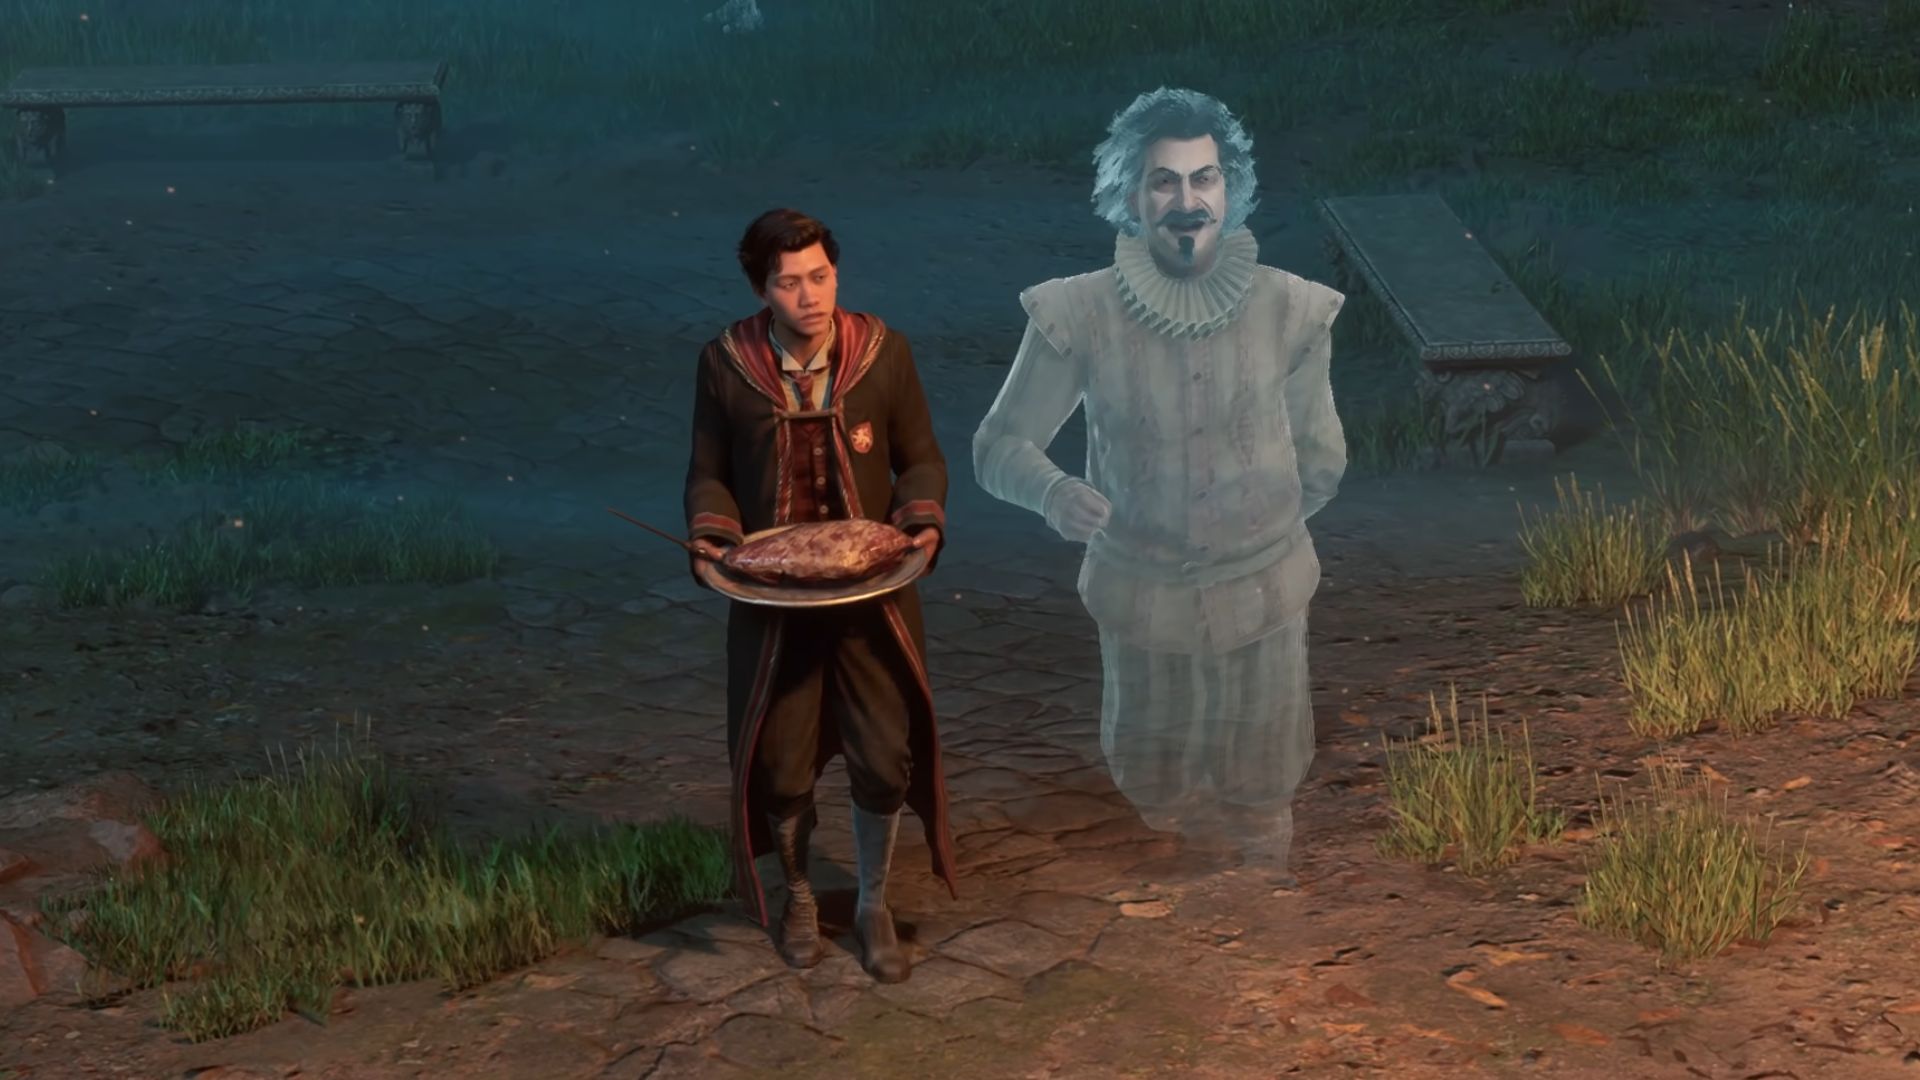 Personajes heredados de Hogwarts: casi sin cabeza se muestra con el jugador